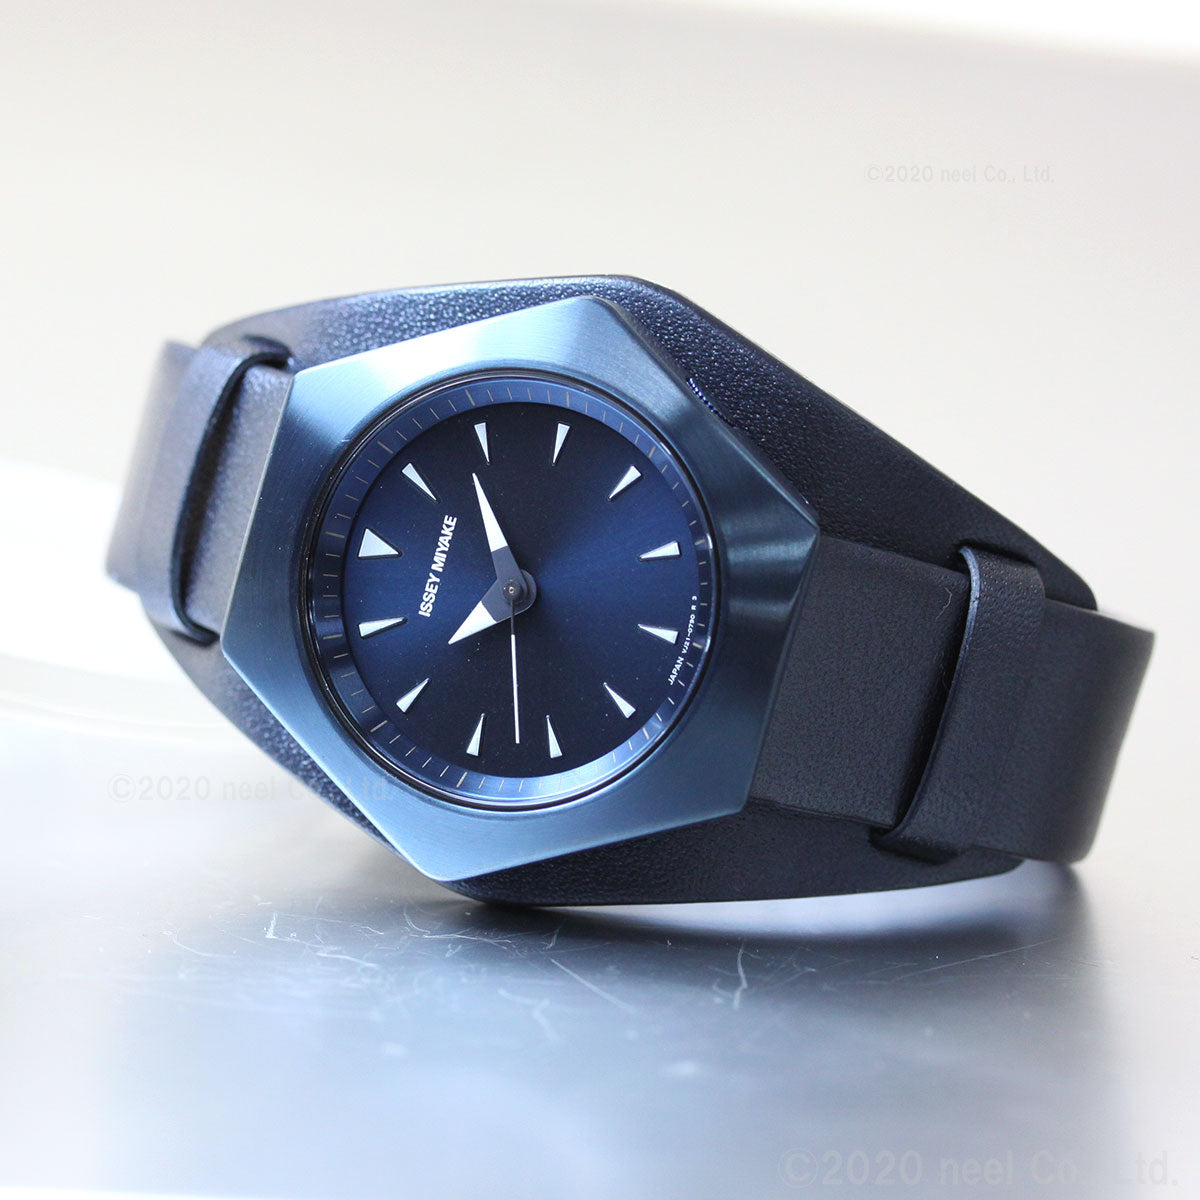 イッセイミヤケ ISSEY MIYAKE 腕時計 メンズ レディース ロク ROKU コンスタンティン・グルチッチ氏 コラボ 限定モデル NYAM702